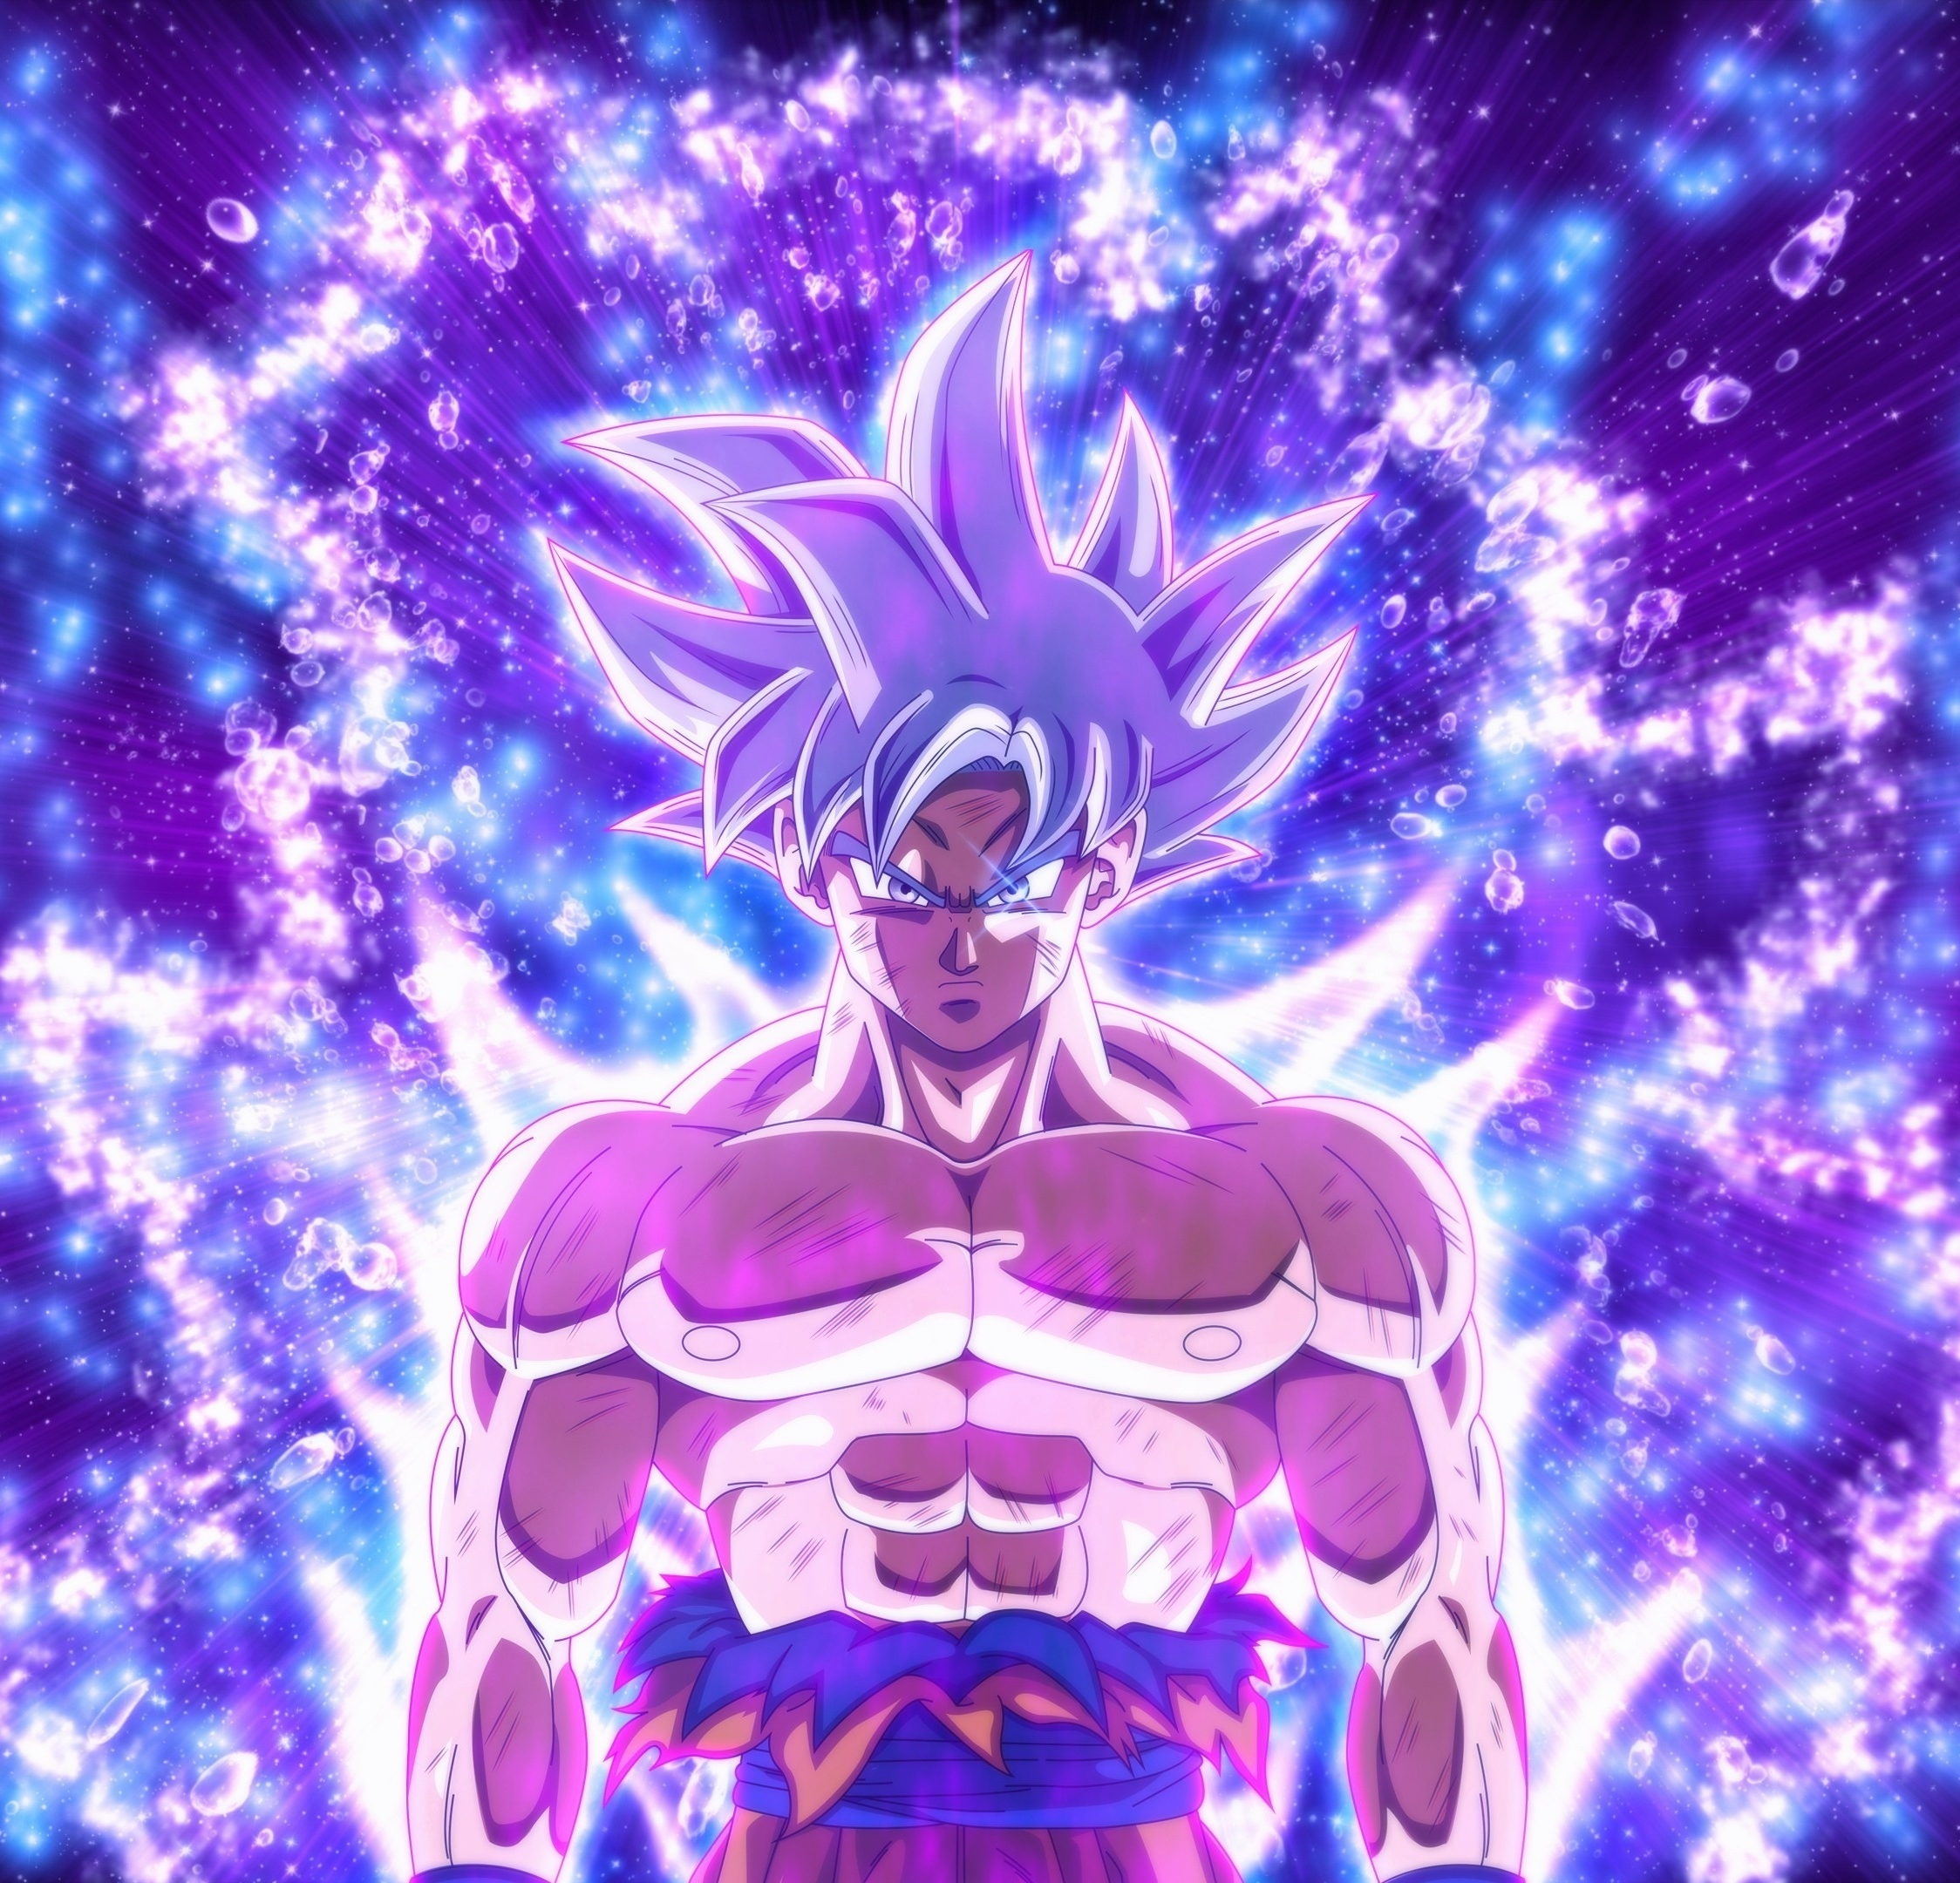 Goku Super Saiyan 3 Colorful Background 4K HD Dragon Ball Wallpapers  HD  Wallpapers  ID 102915